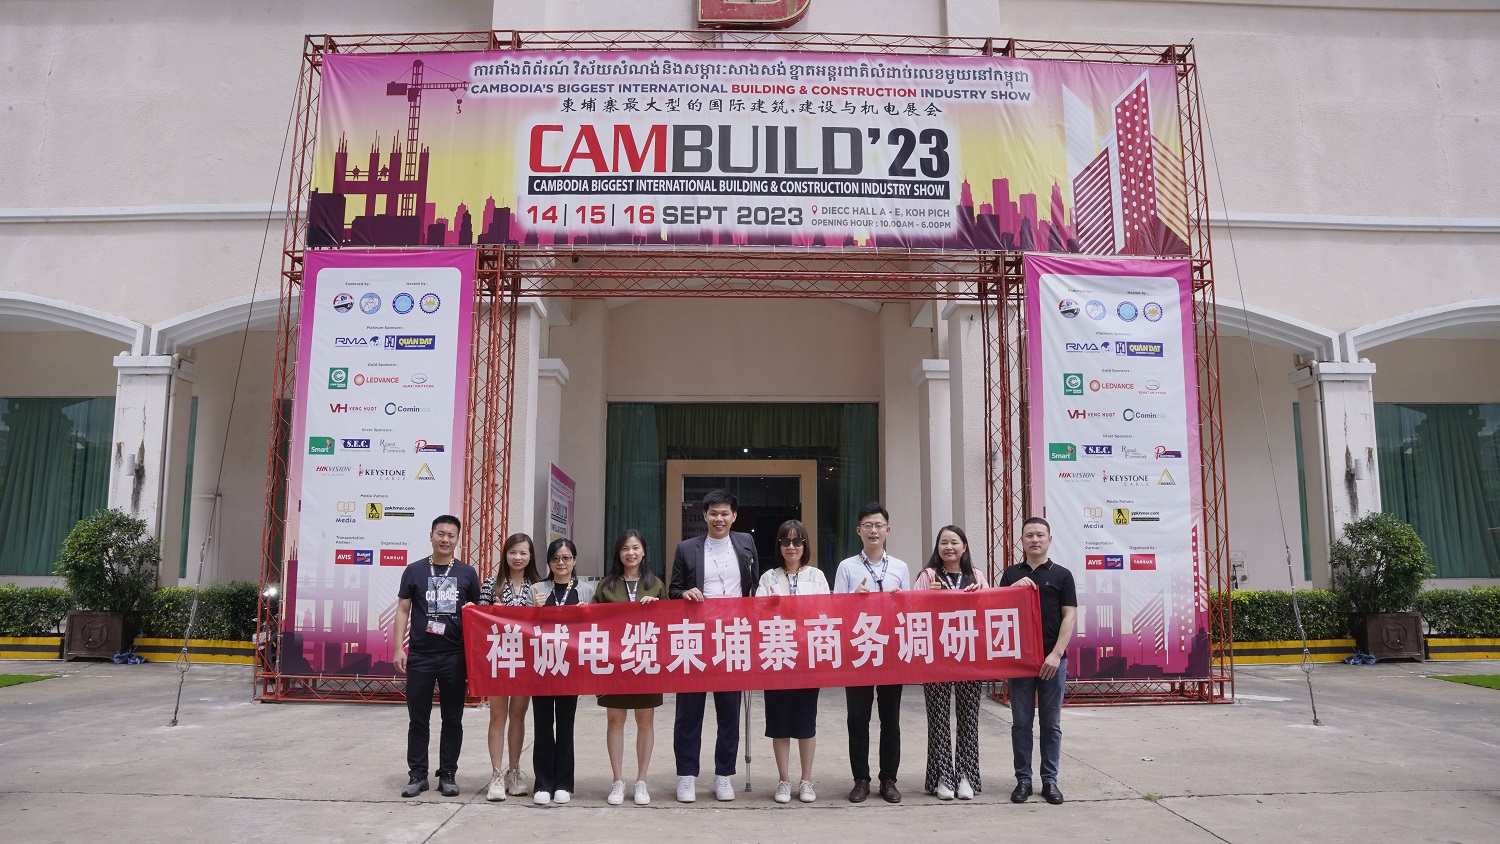 十大网赌网址公司亮相柬埔寨国际建筑建材展览会——CAMBUILD 2023！